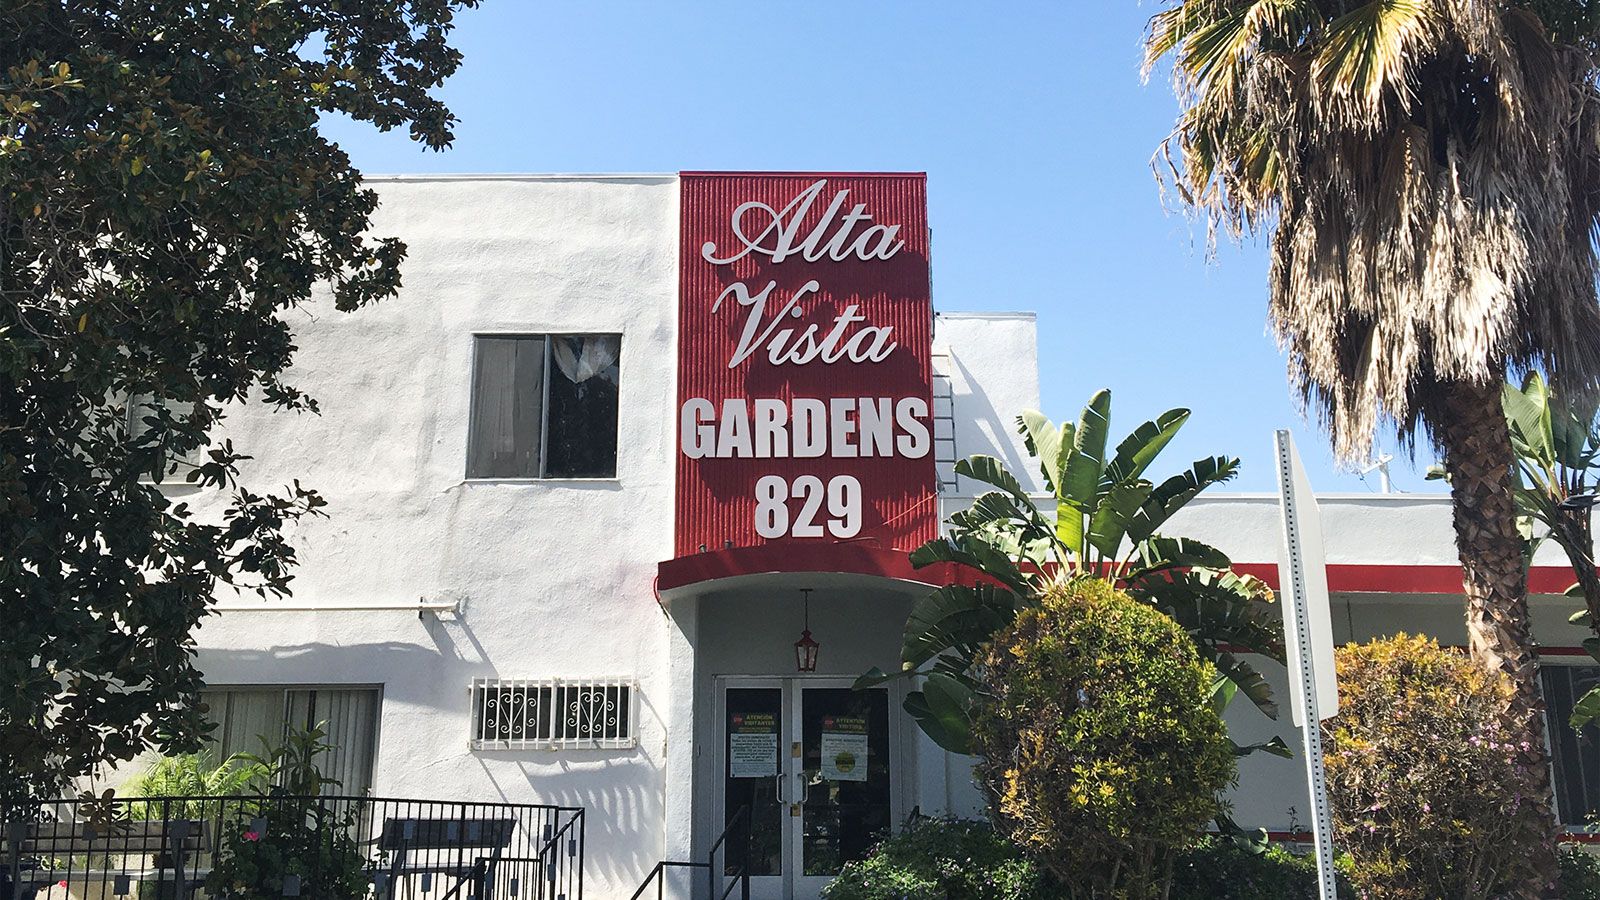 Alta Vista Gardens 3D letters